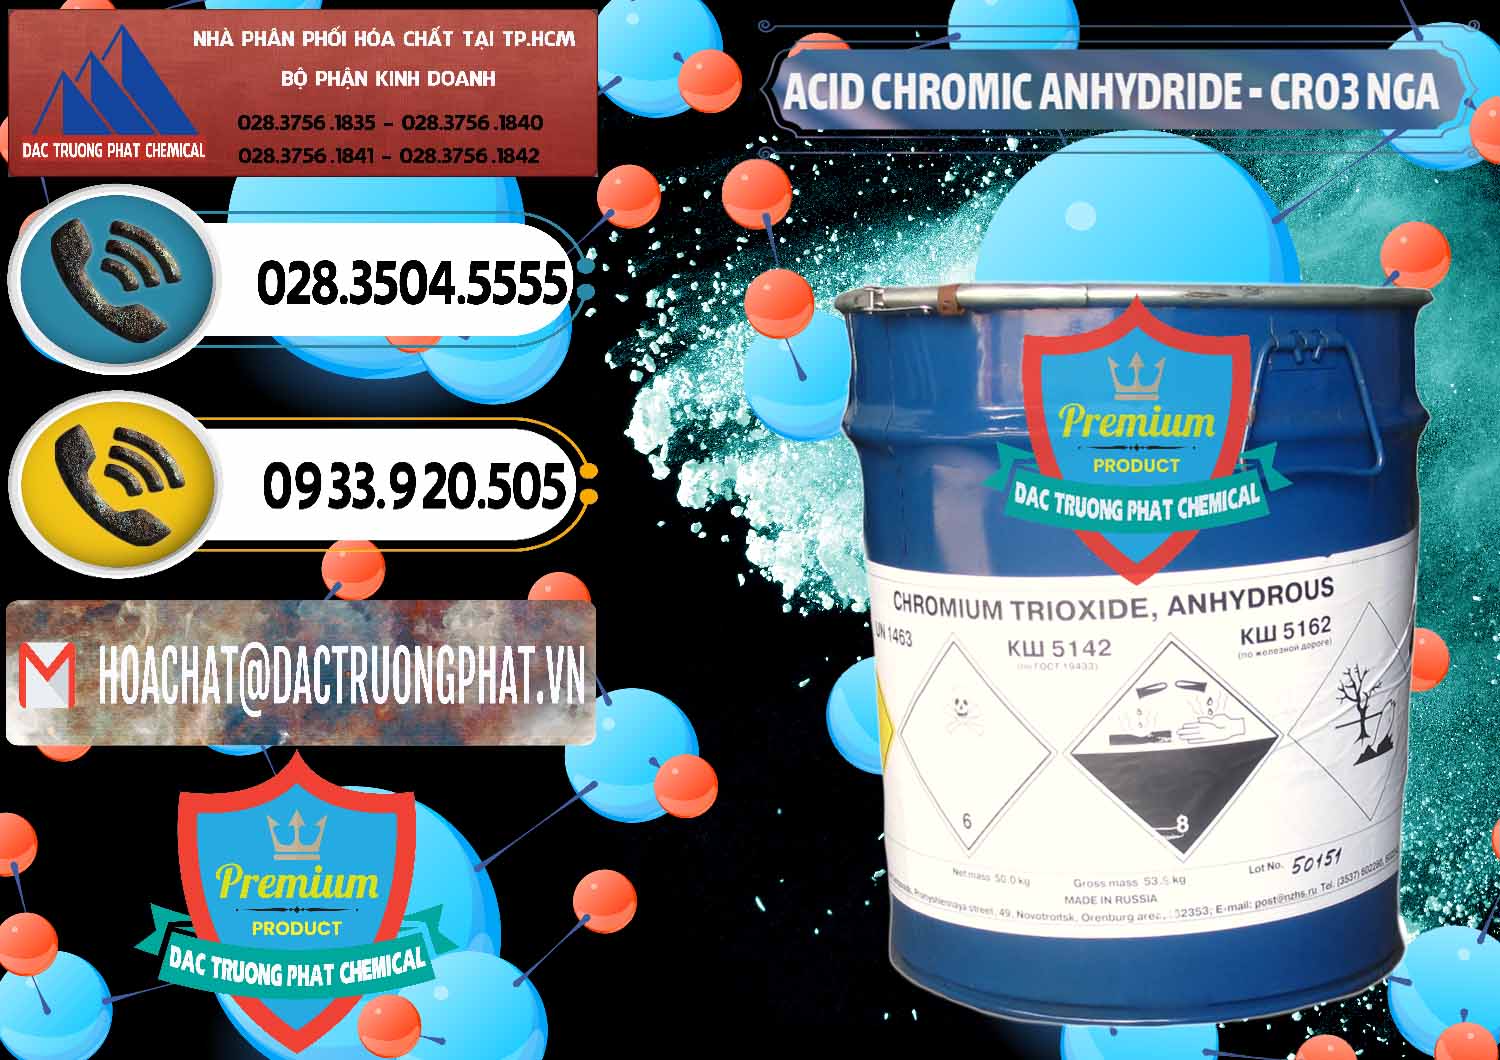 Đơn vị chuyên nhập khẩu _ bán Acid Chromic Anhydride - Cromic CRO3 Nga Russia - 0006 - Nơi bán và phân phối hóa chất tại TP.HCM - hoachatdetnhuom.vn